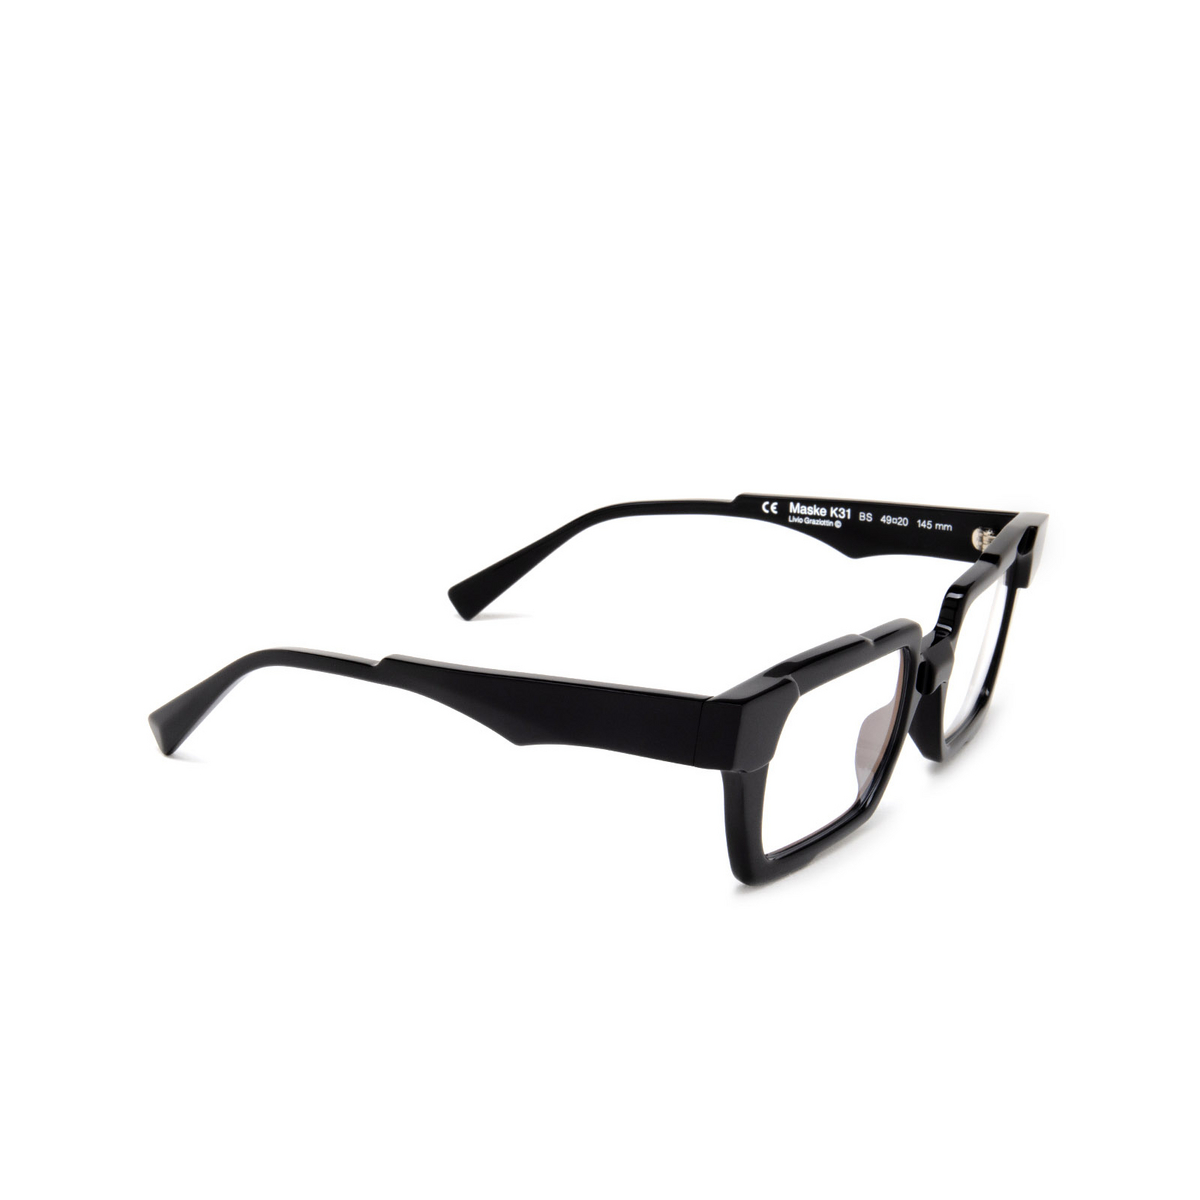 Kuboraum K31 Eyeglasses BS Black Shine - three-quarters view